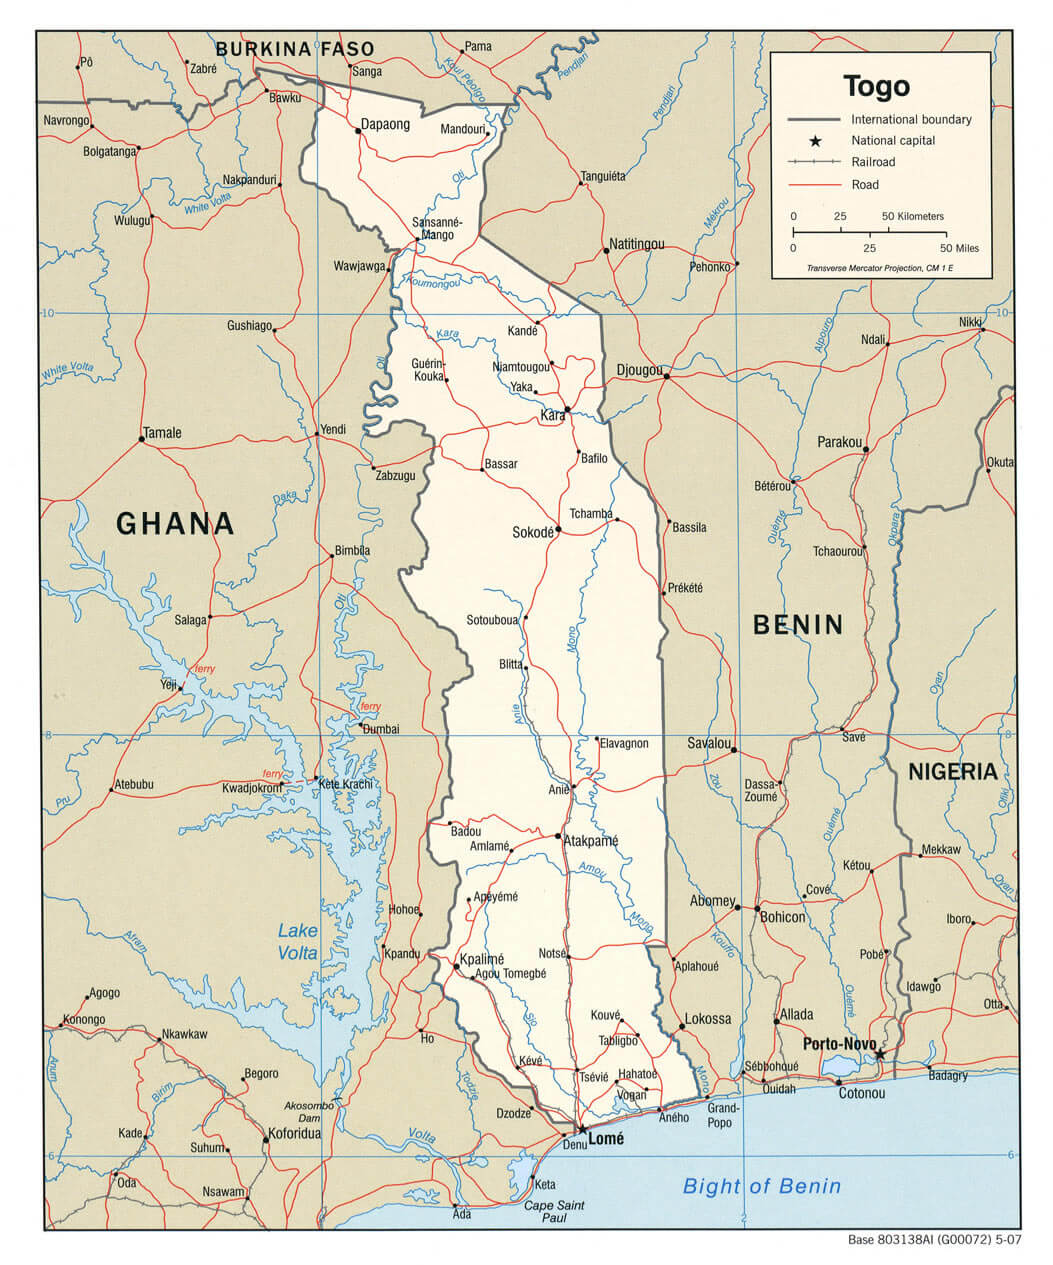 Togo linderung karte